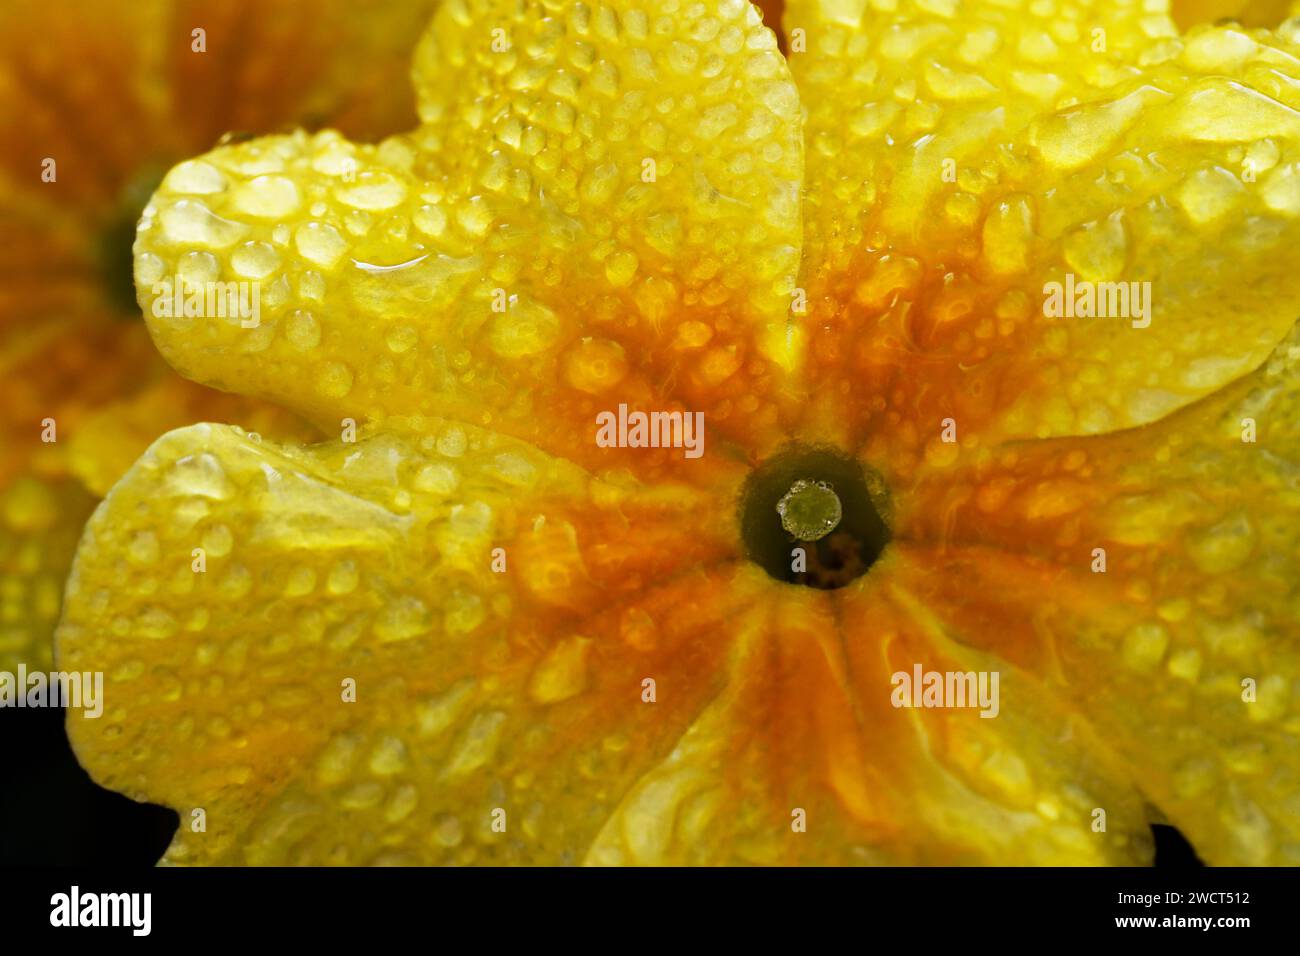 Un macro shot di una Primrose Fruelo (Primula) ricoperta di gocce di rugiada. Foto Stock